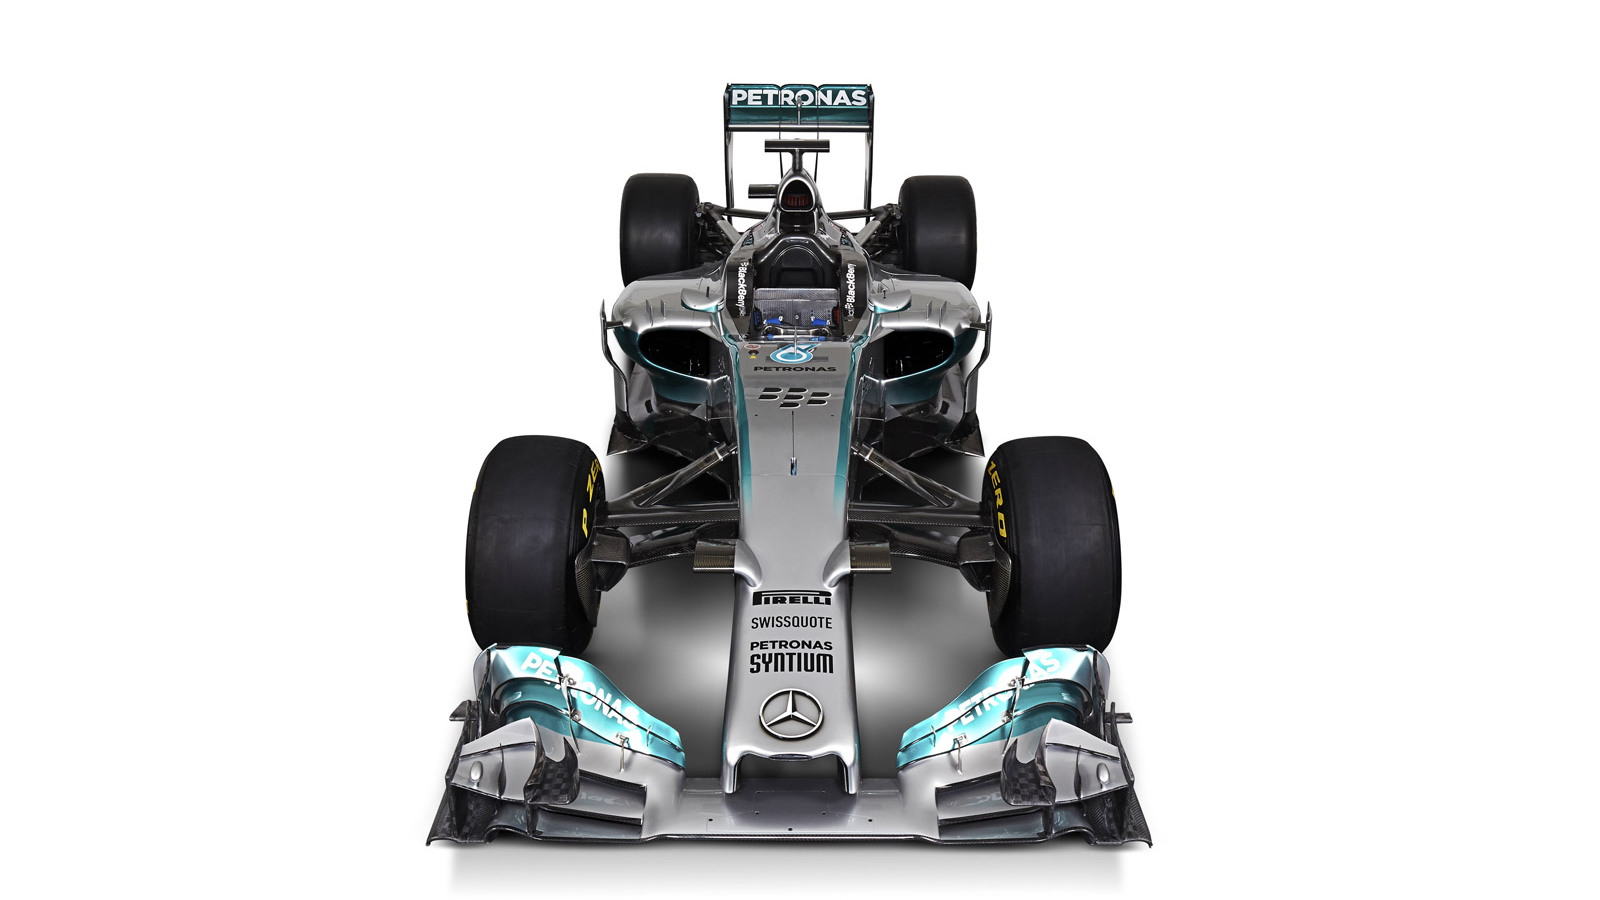 Mercedes AMG's W05 2014 Formula One car